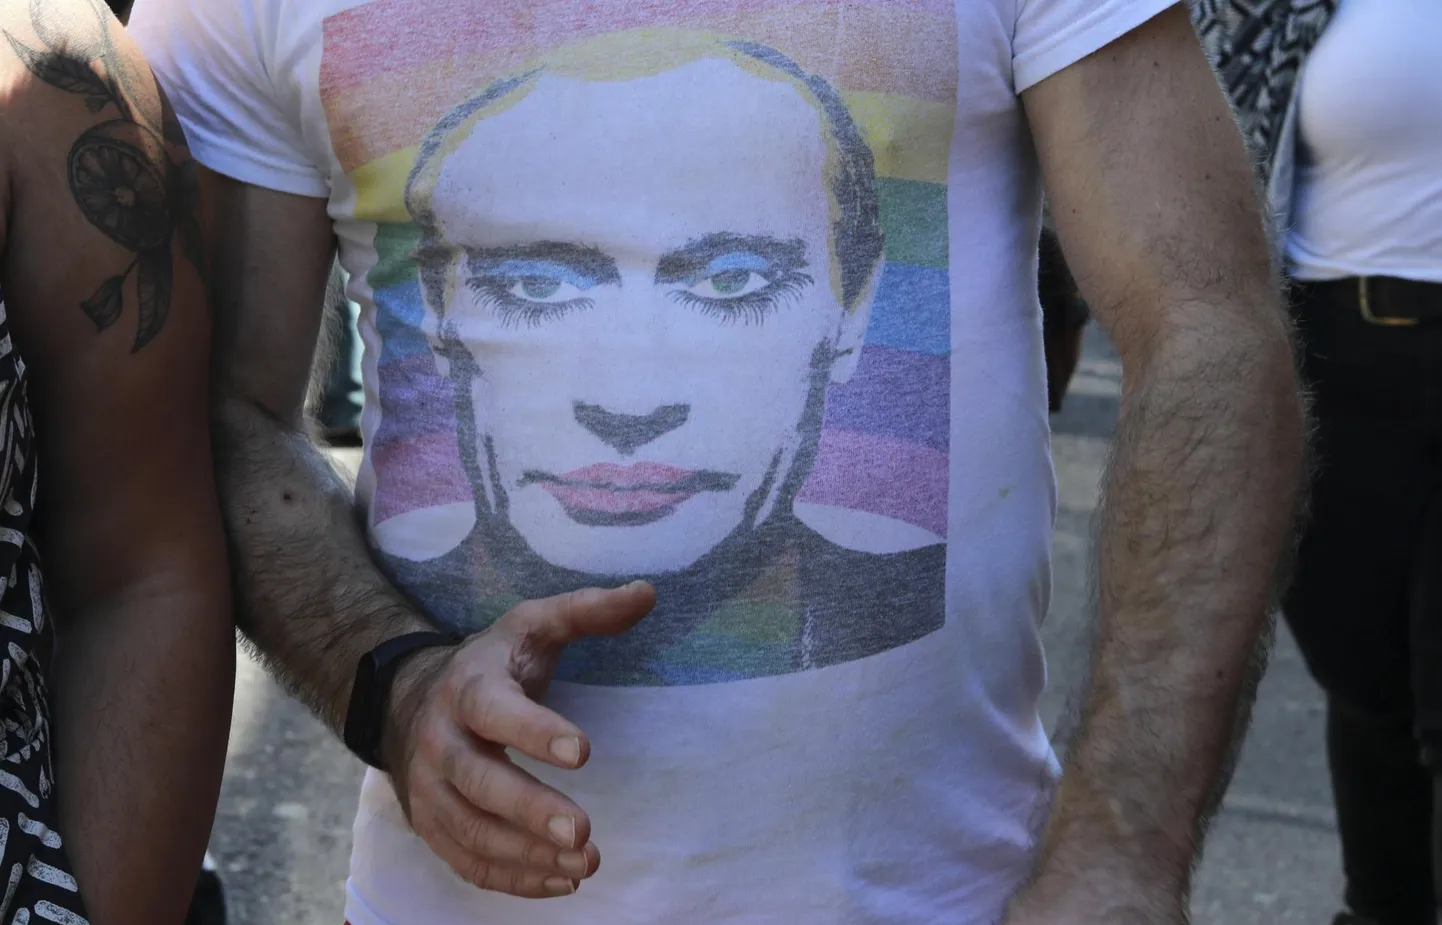 Venemaa presidenti Vladimir Putinit vikerkaarelipu taustal kujutavas särgis mees tänavu Lõuna-Aafrika Vabariigis Kaplinnas seksuaalvähemuste marsil.